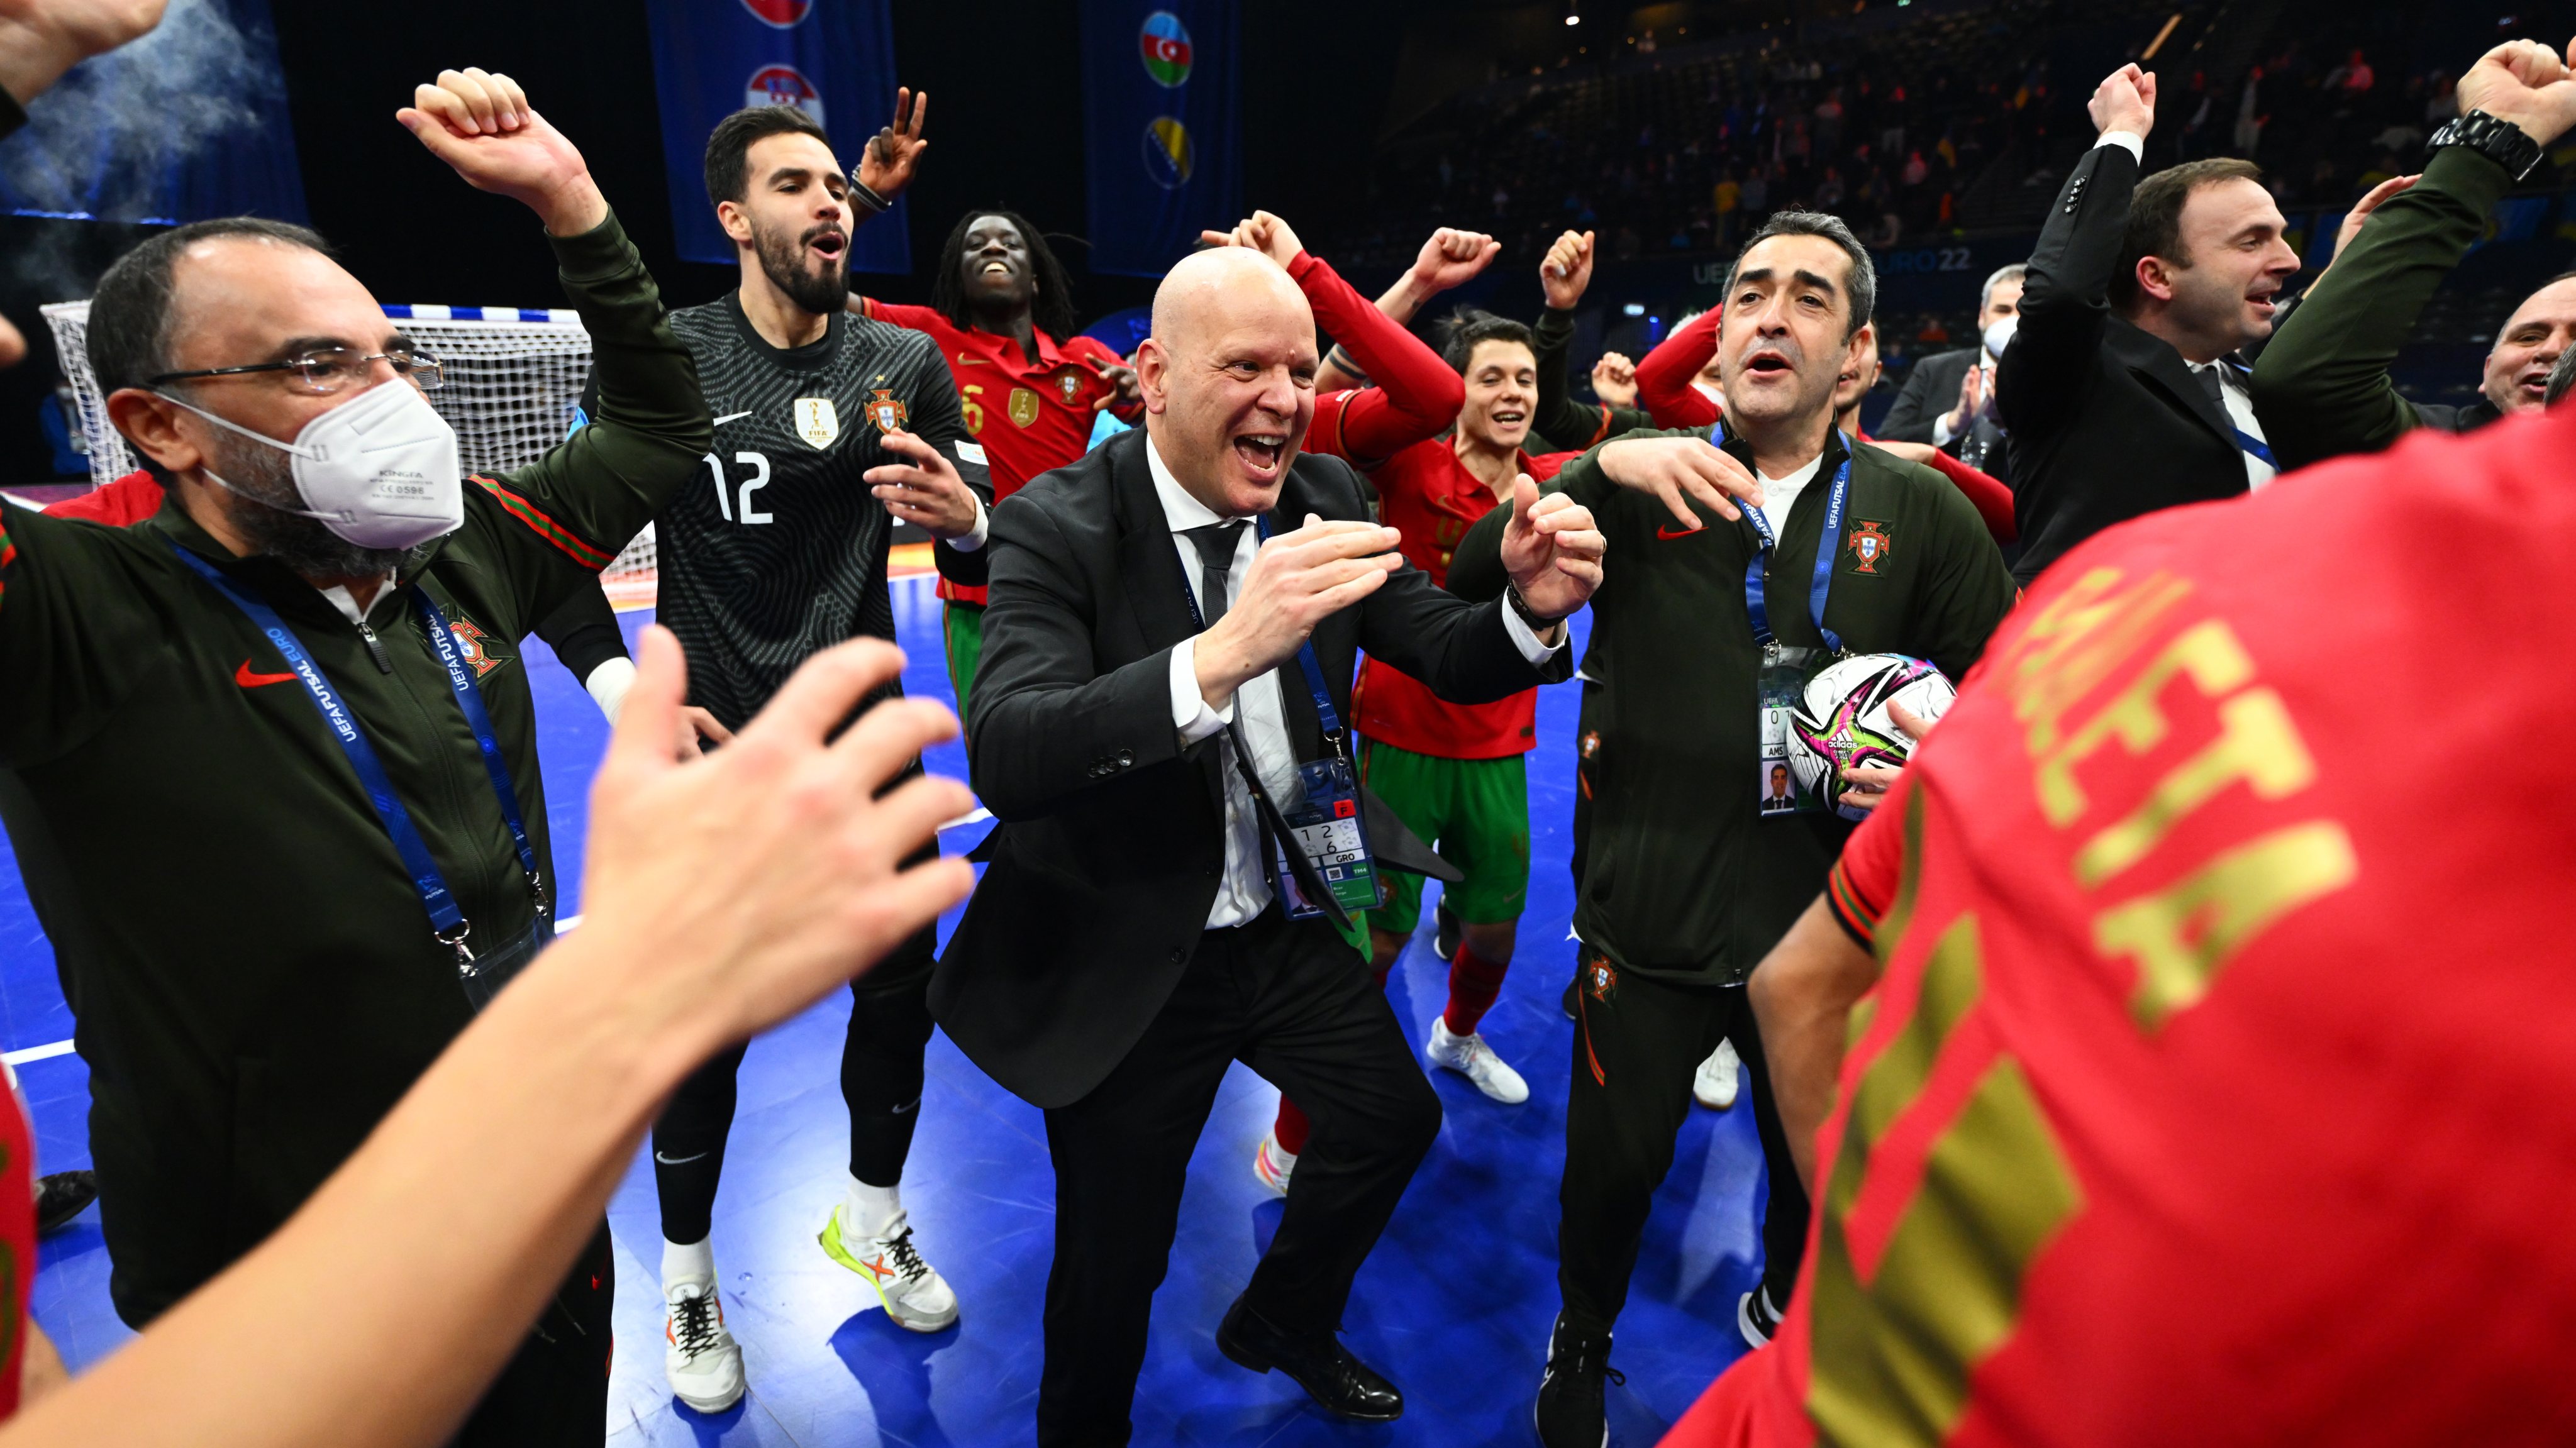 Portugal v Russia: Final - UEFA Futsal Euro 2022